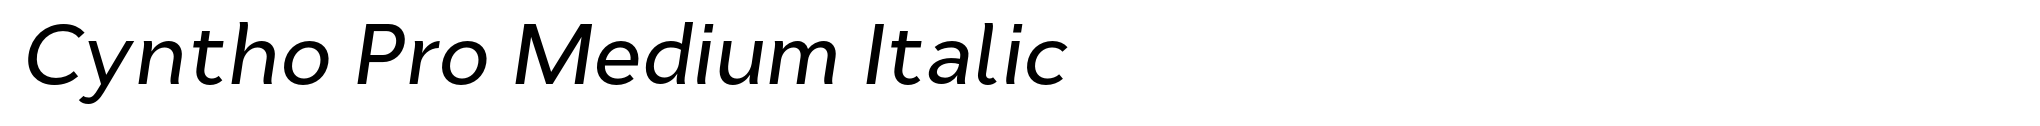 Cyntho Pro Medium Italic image